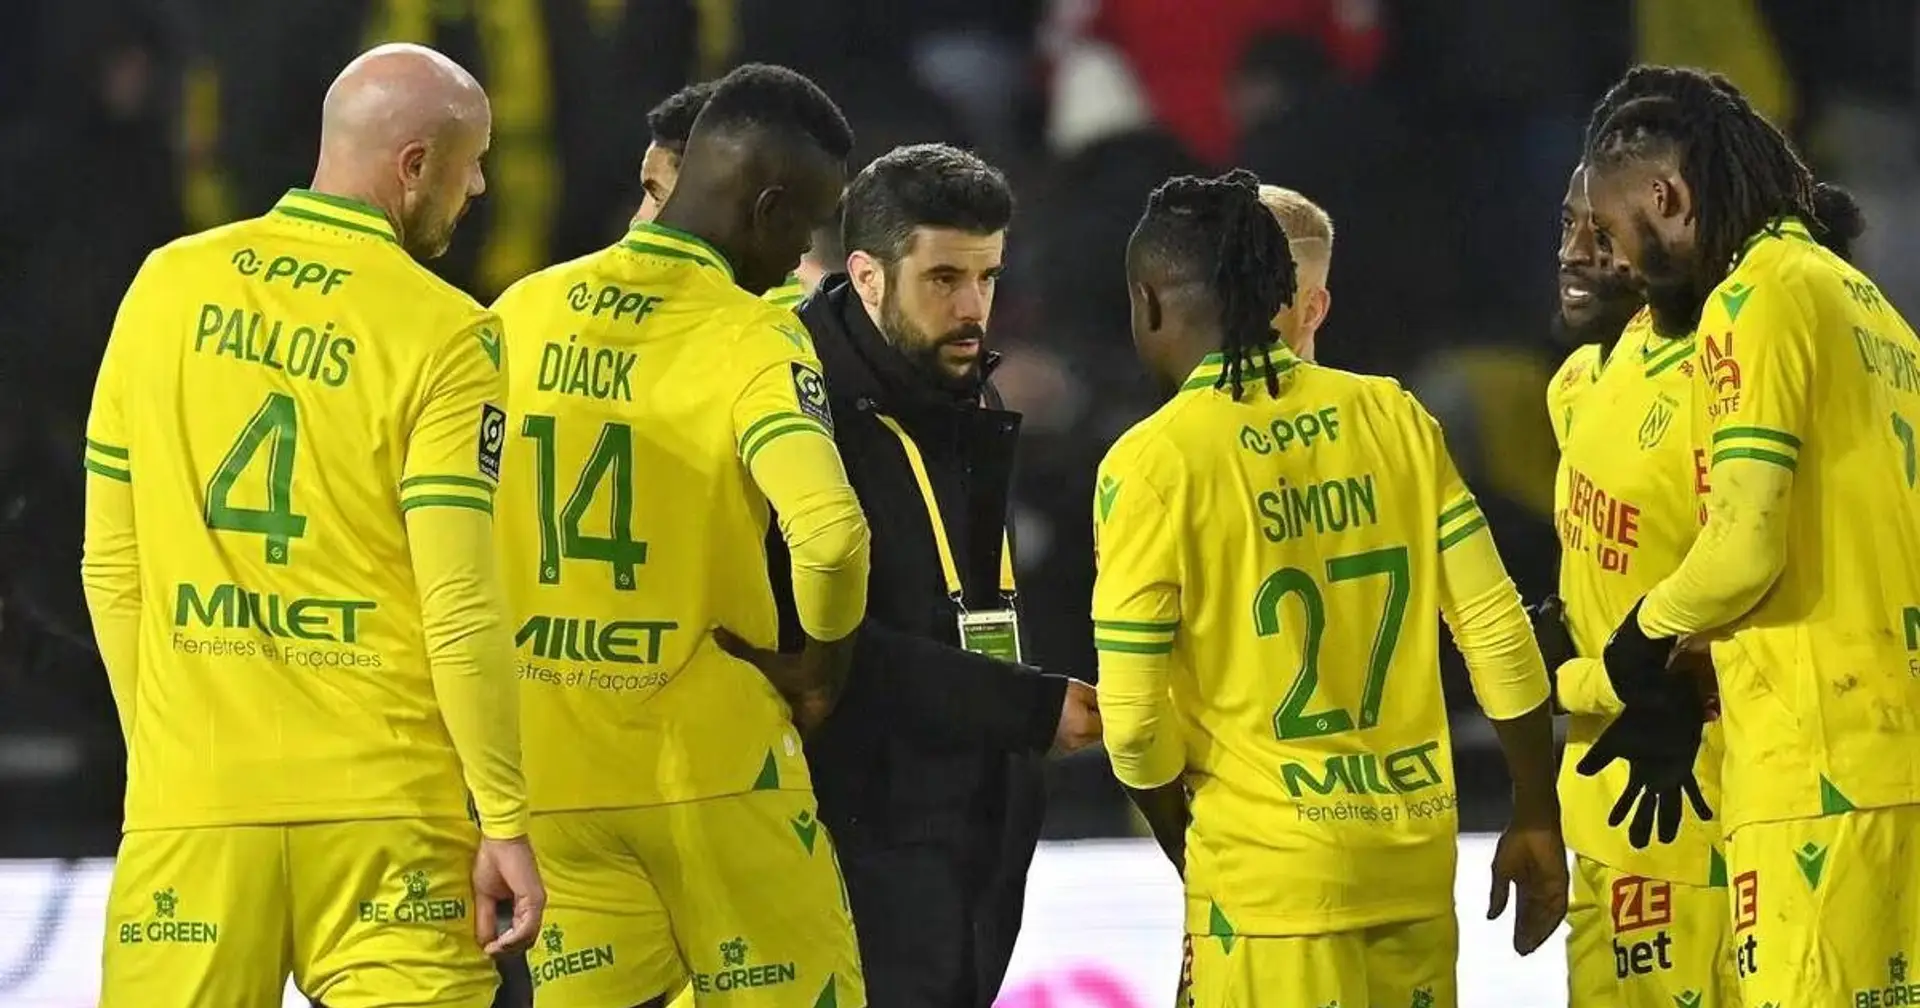 Tragedia in Francia, un tifoso del Nantes accoltellato prima della partita col Nizza, Club e tecnico sotto shock